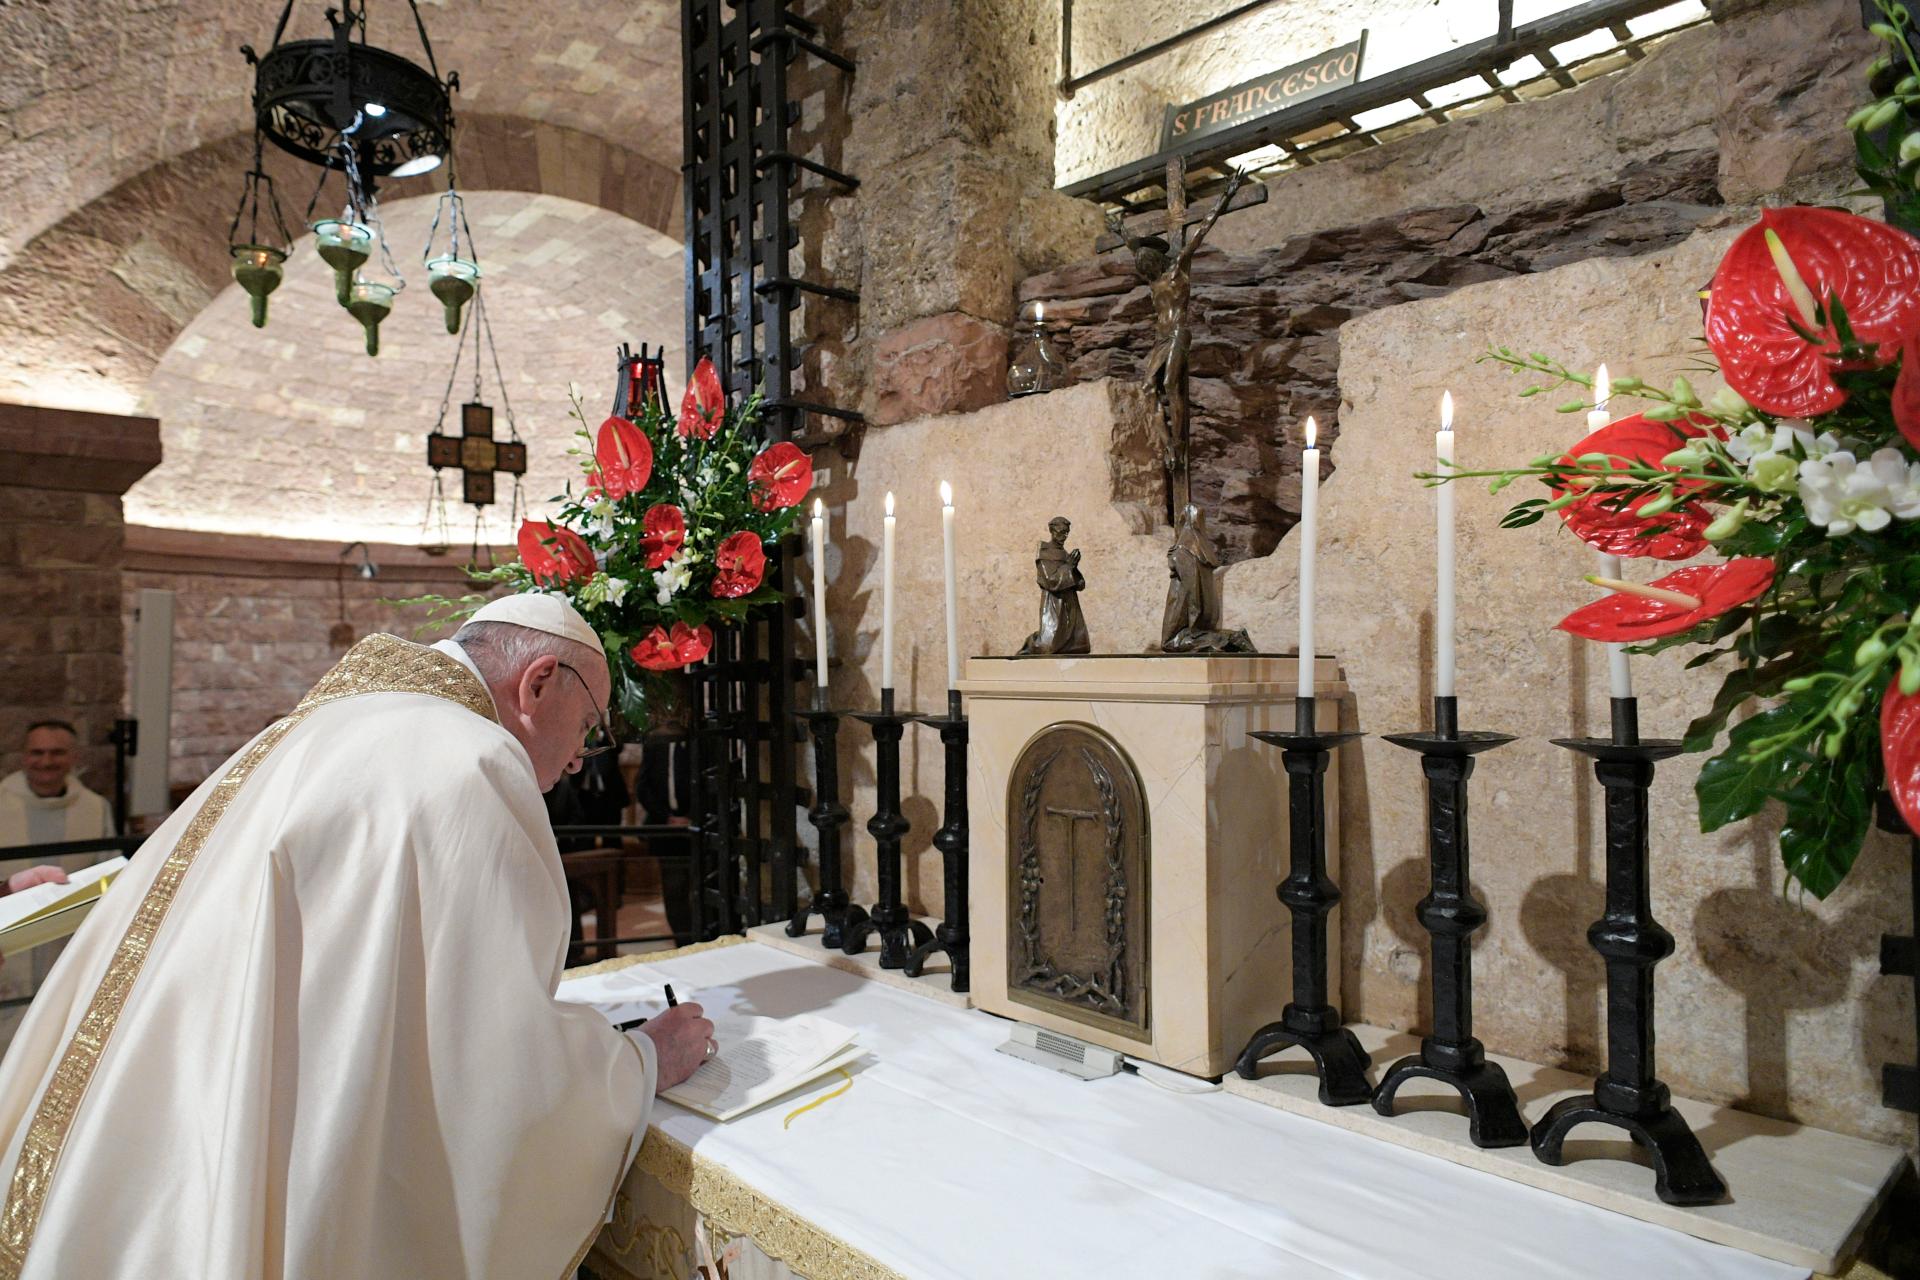 El Papa Francisco, en un acto religioso recientemente. FOTO: Pontifex